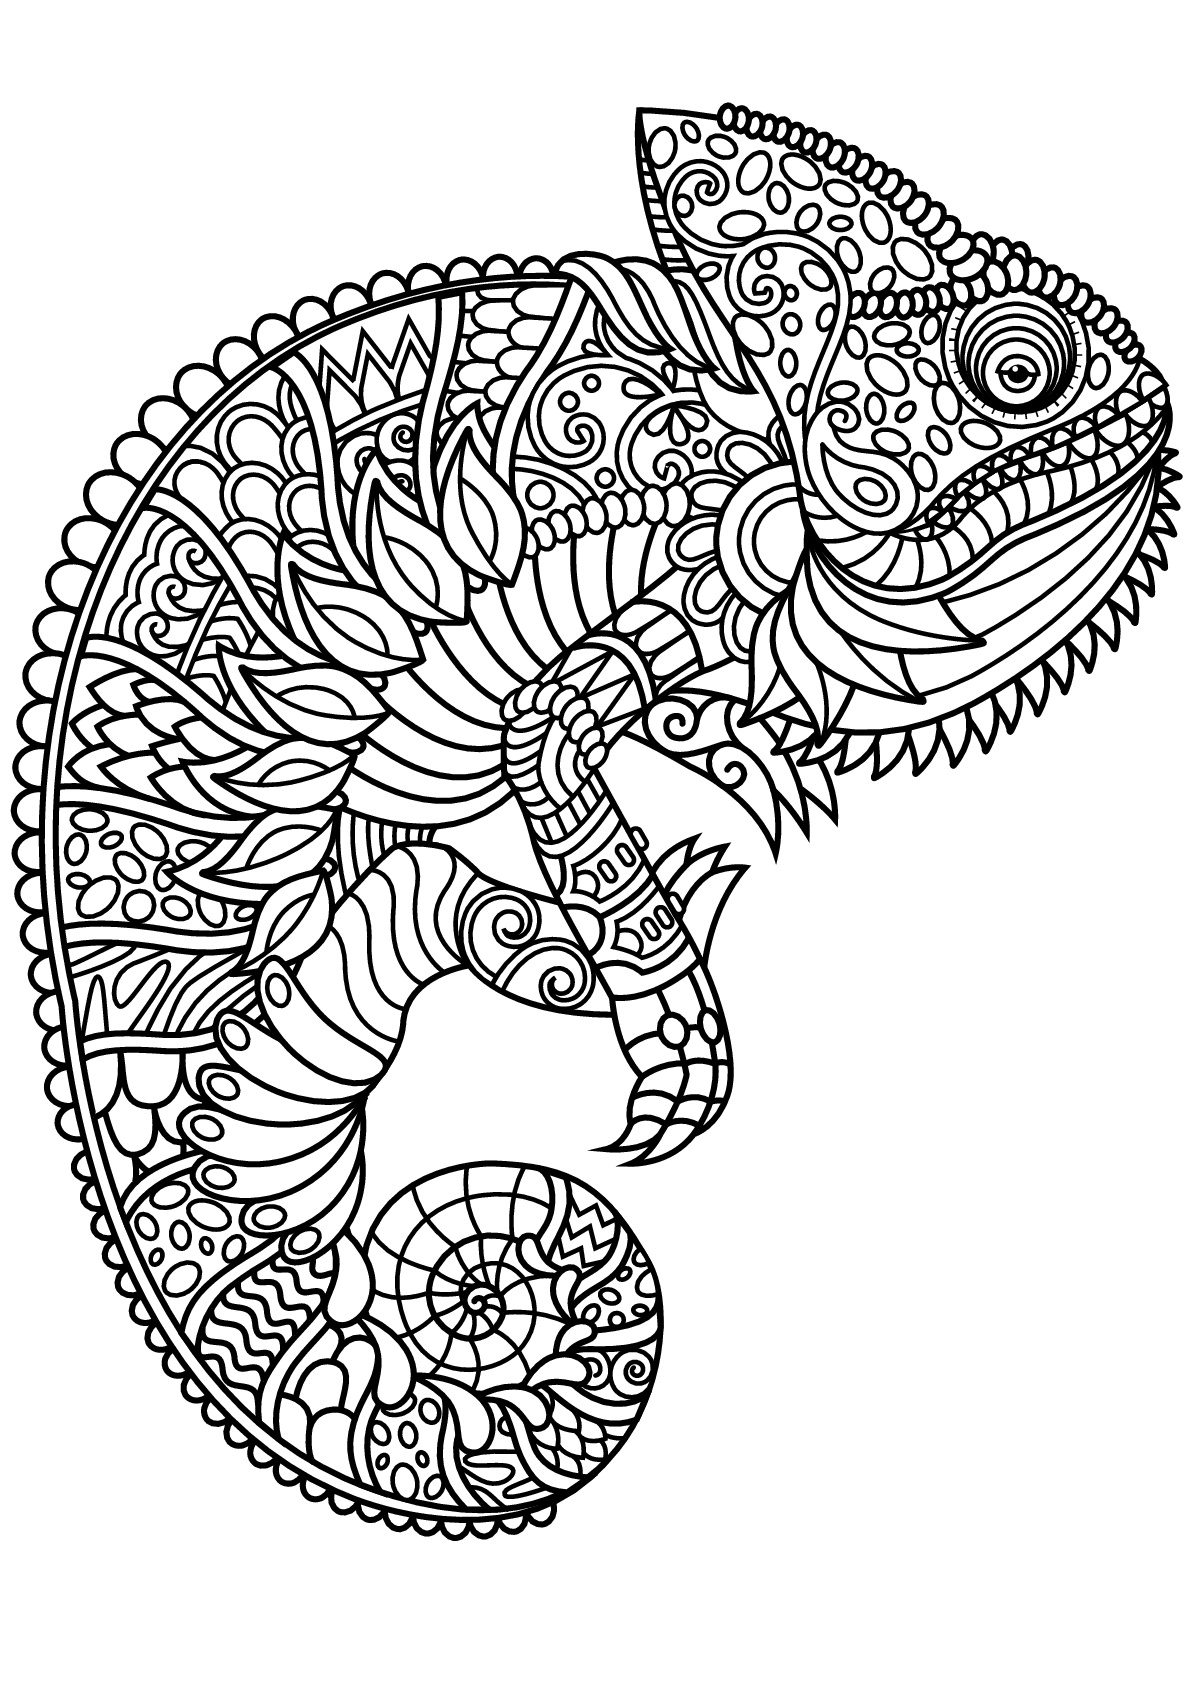 Download Free book chameleon - Chameleons & lizards Adult Coloring ...